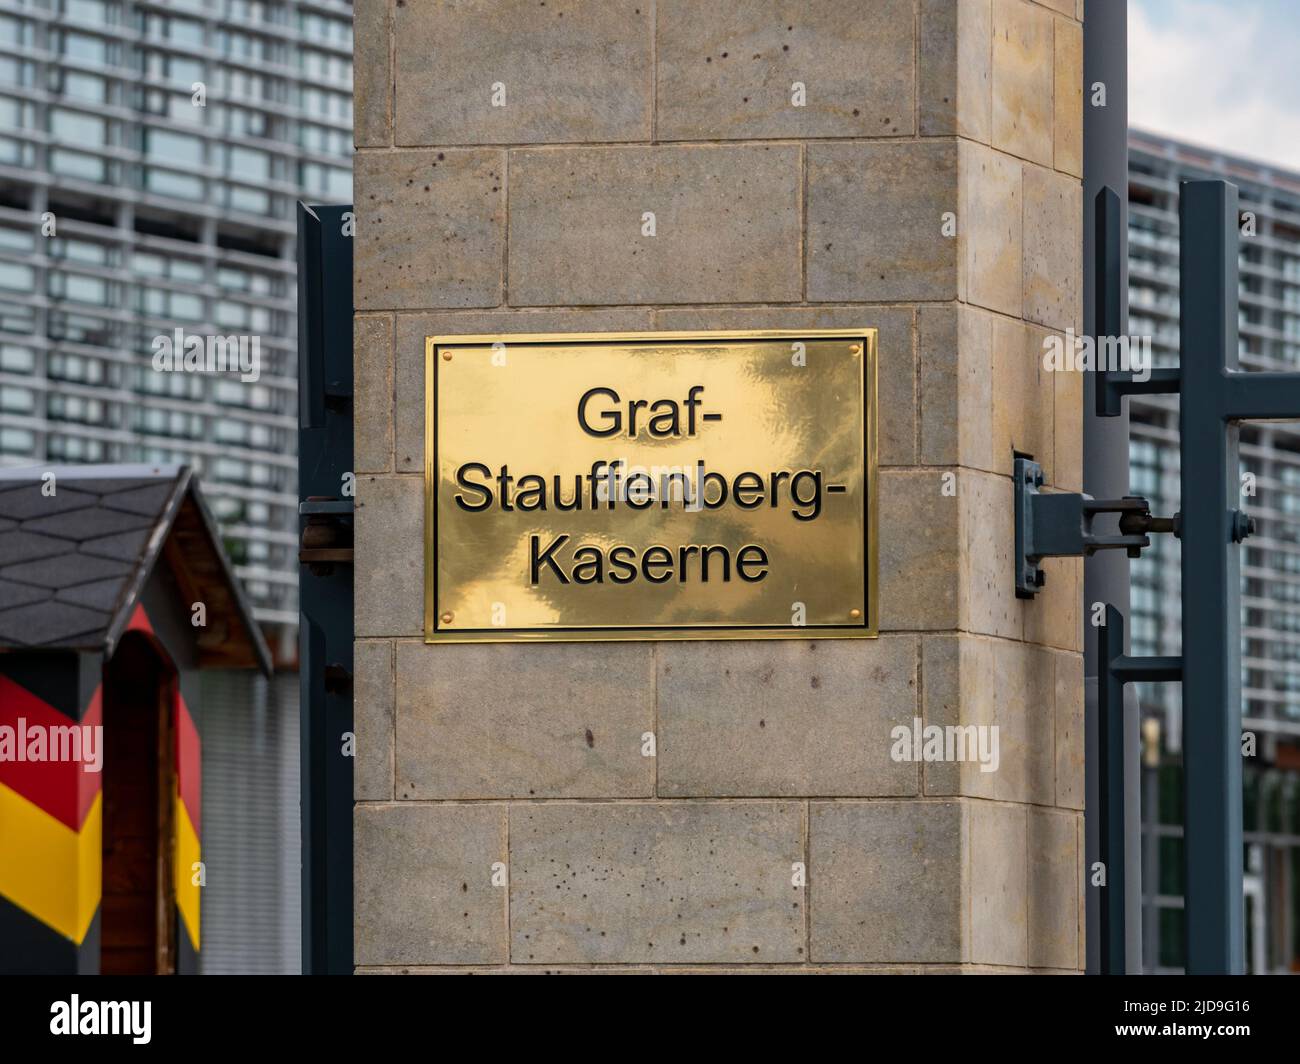 Logo Graf Stauffenberg Kaserne sulla parete di ingresso di un'accademia militare. L'edificio delle caserme militari prende il nome dal combattente della resistenza. Foto Stock